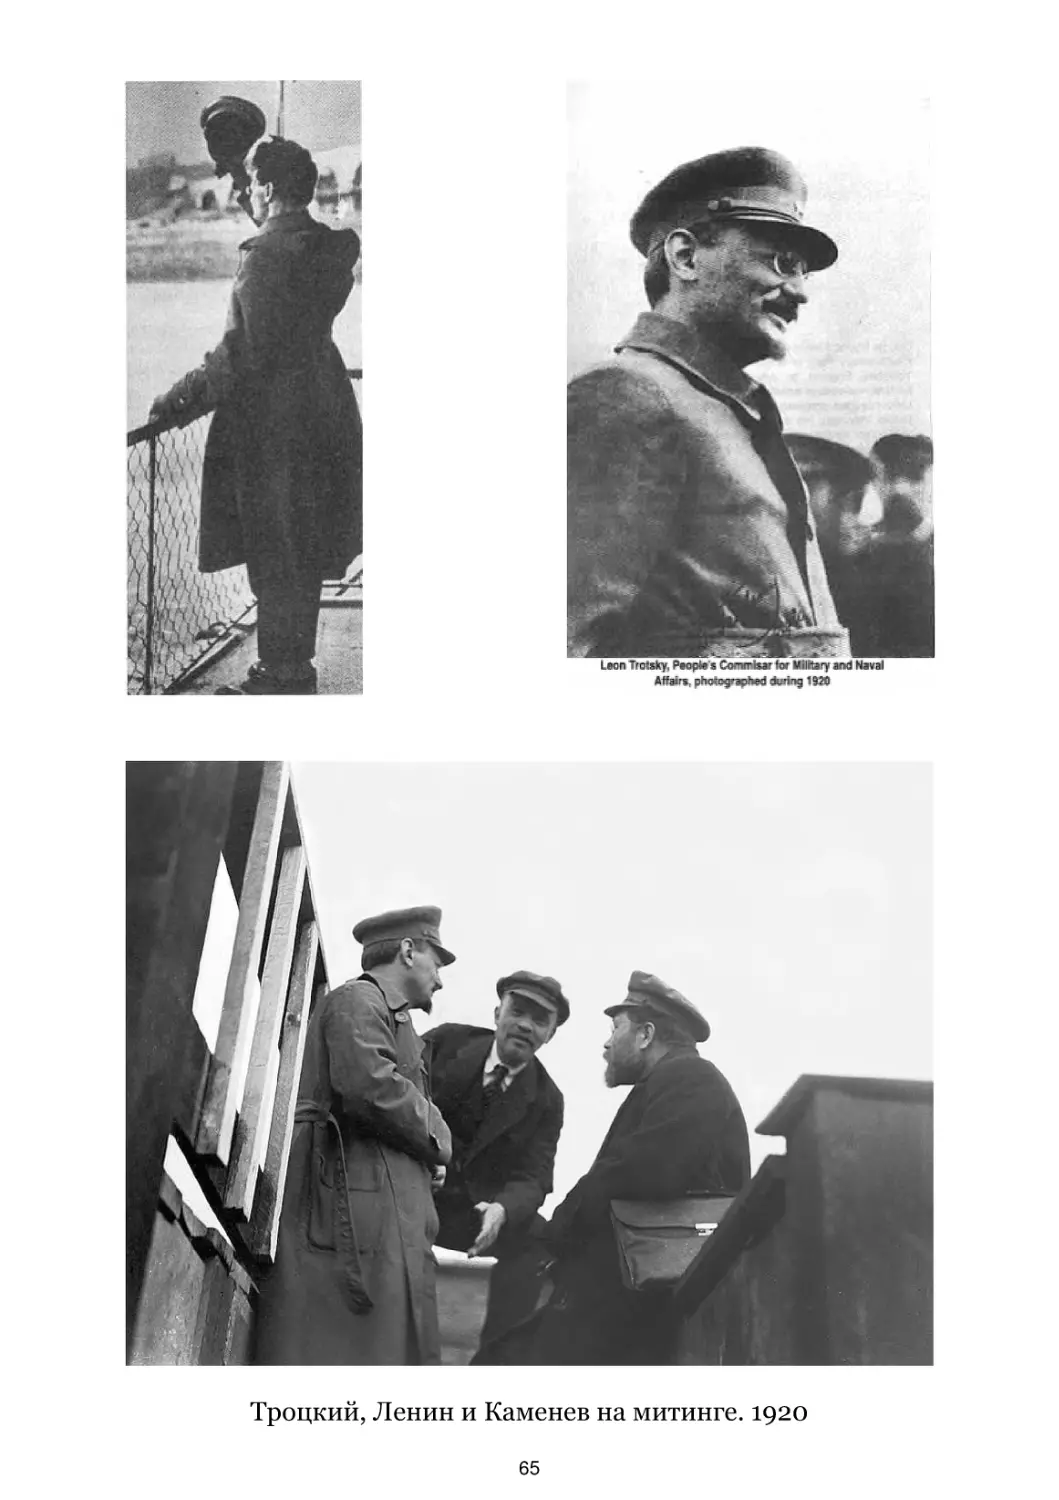 Троцкий, Ленин и Каменев на митинге. 1920